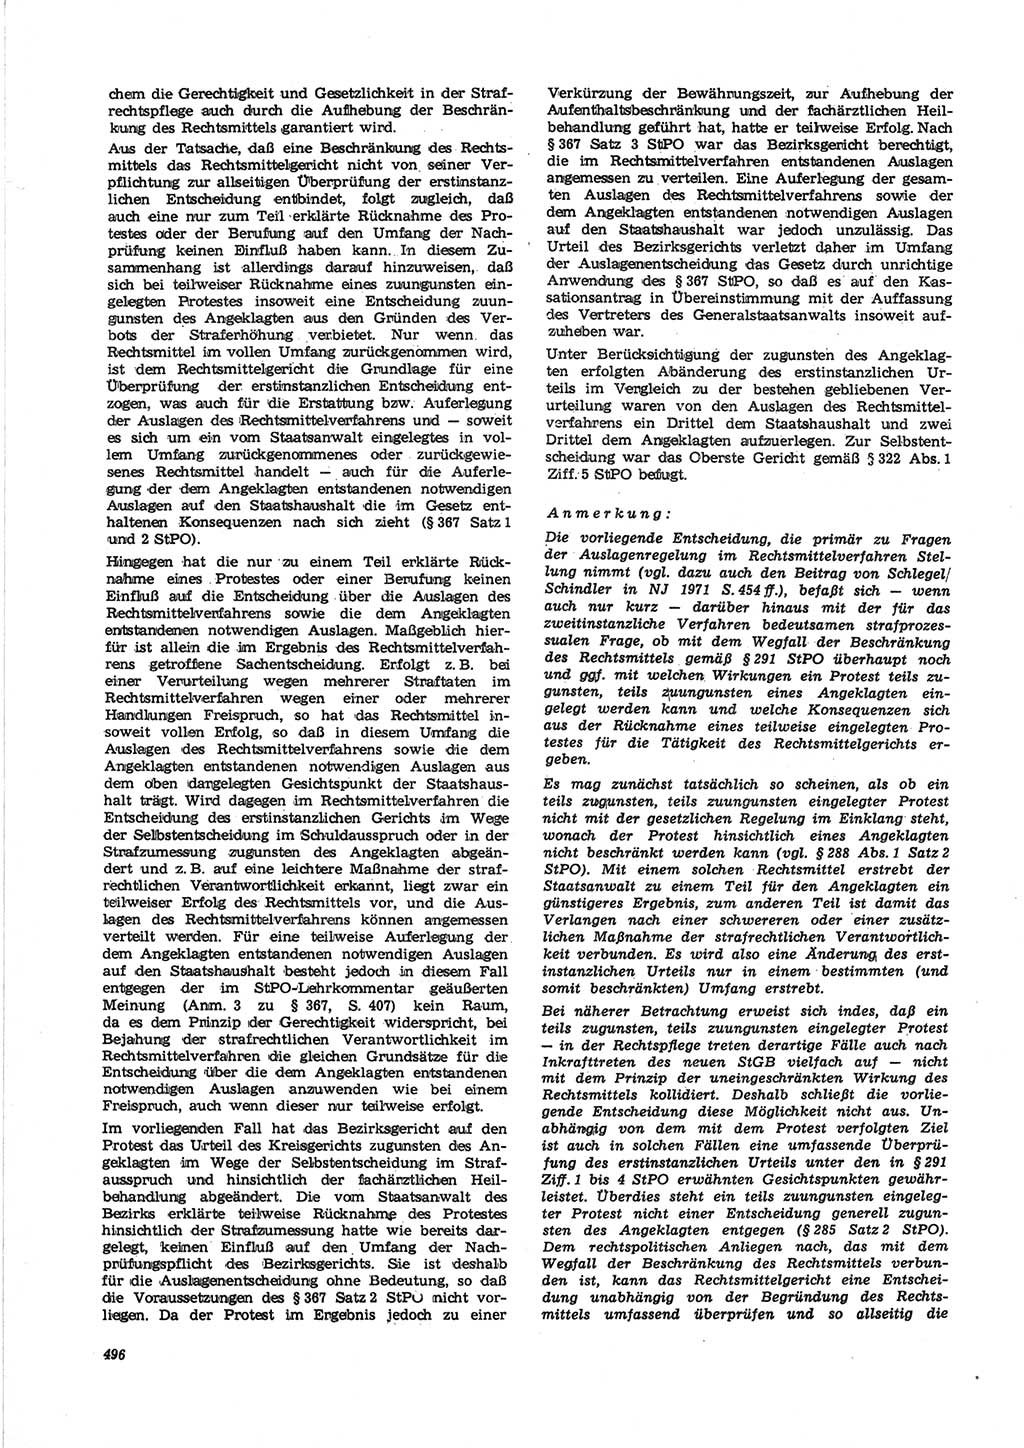 Neue Justiz (NJ), Zeitschrift für Recht und Rechtswissenschaft [Deutsche Demokratische Republik (DDR)], 25. Jahrgang 1971, Seite 496 (NJ DDR 1971, S. 496)